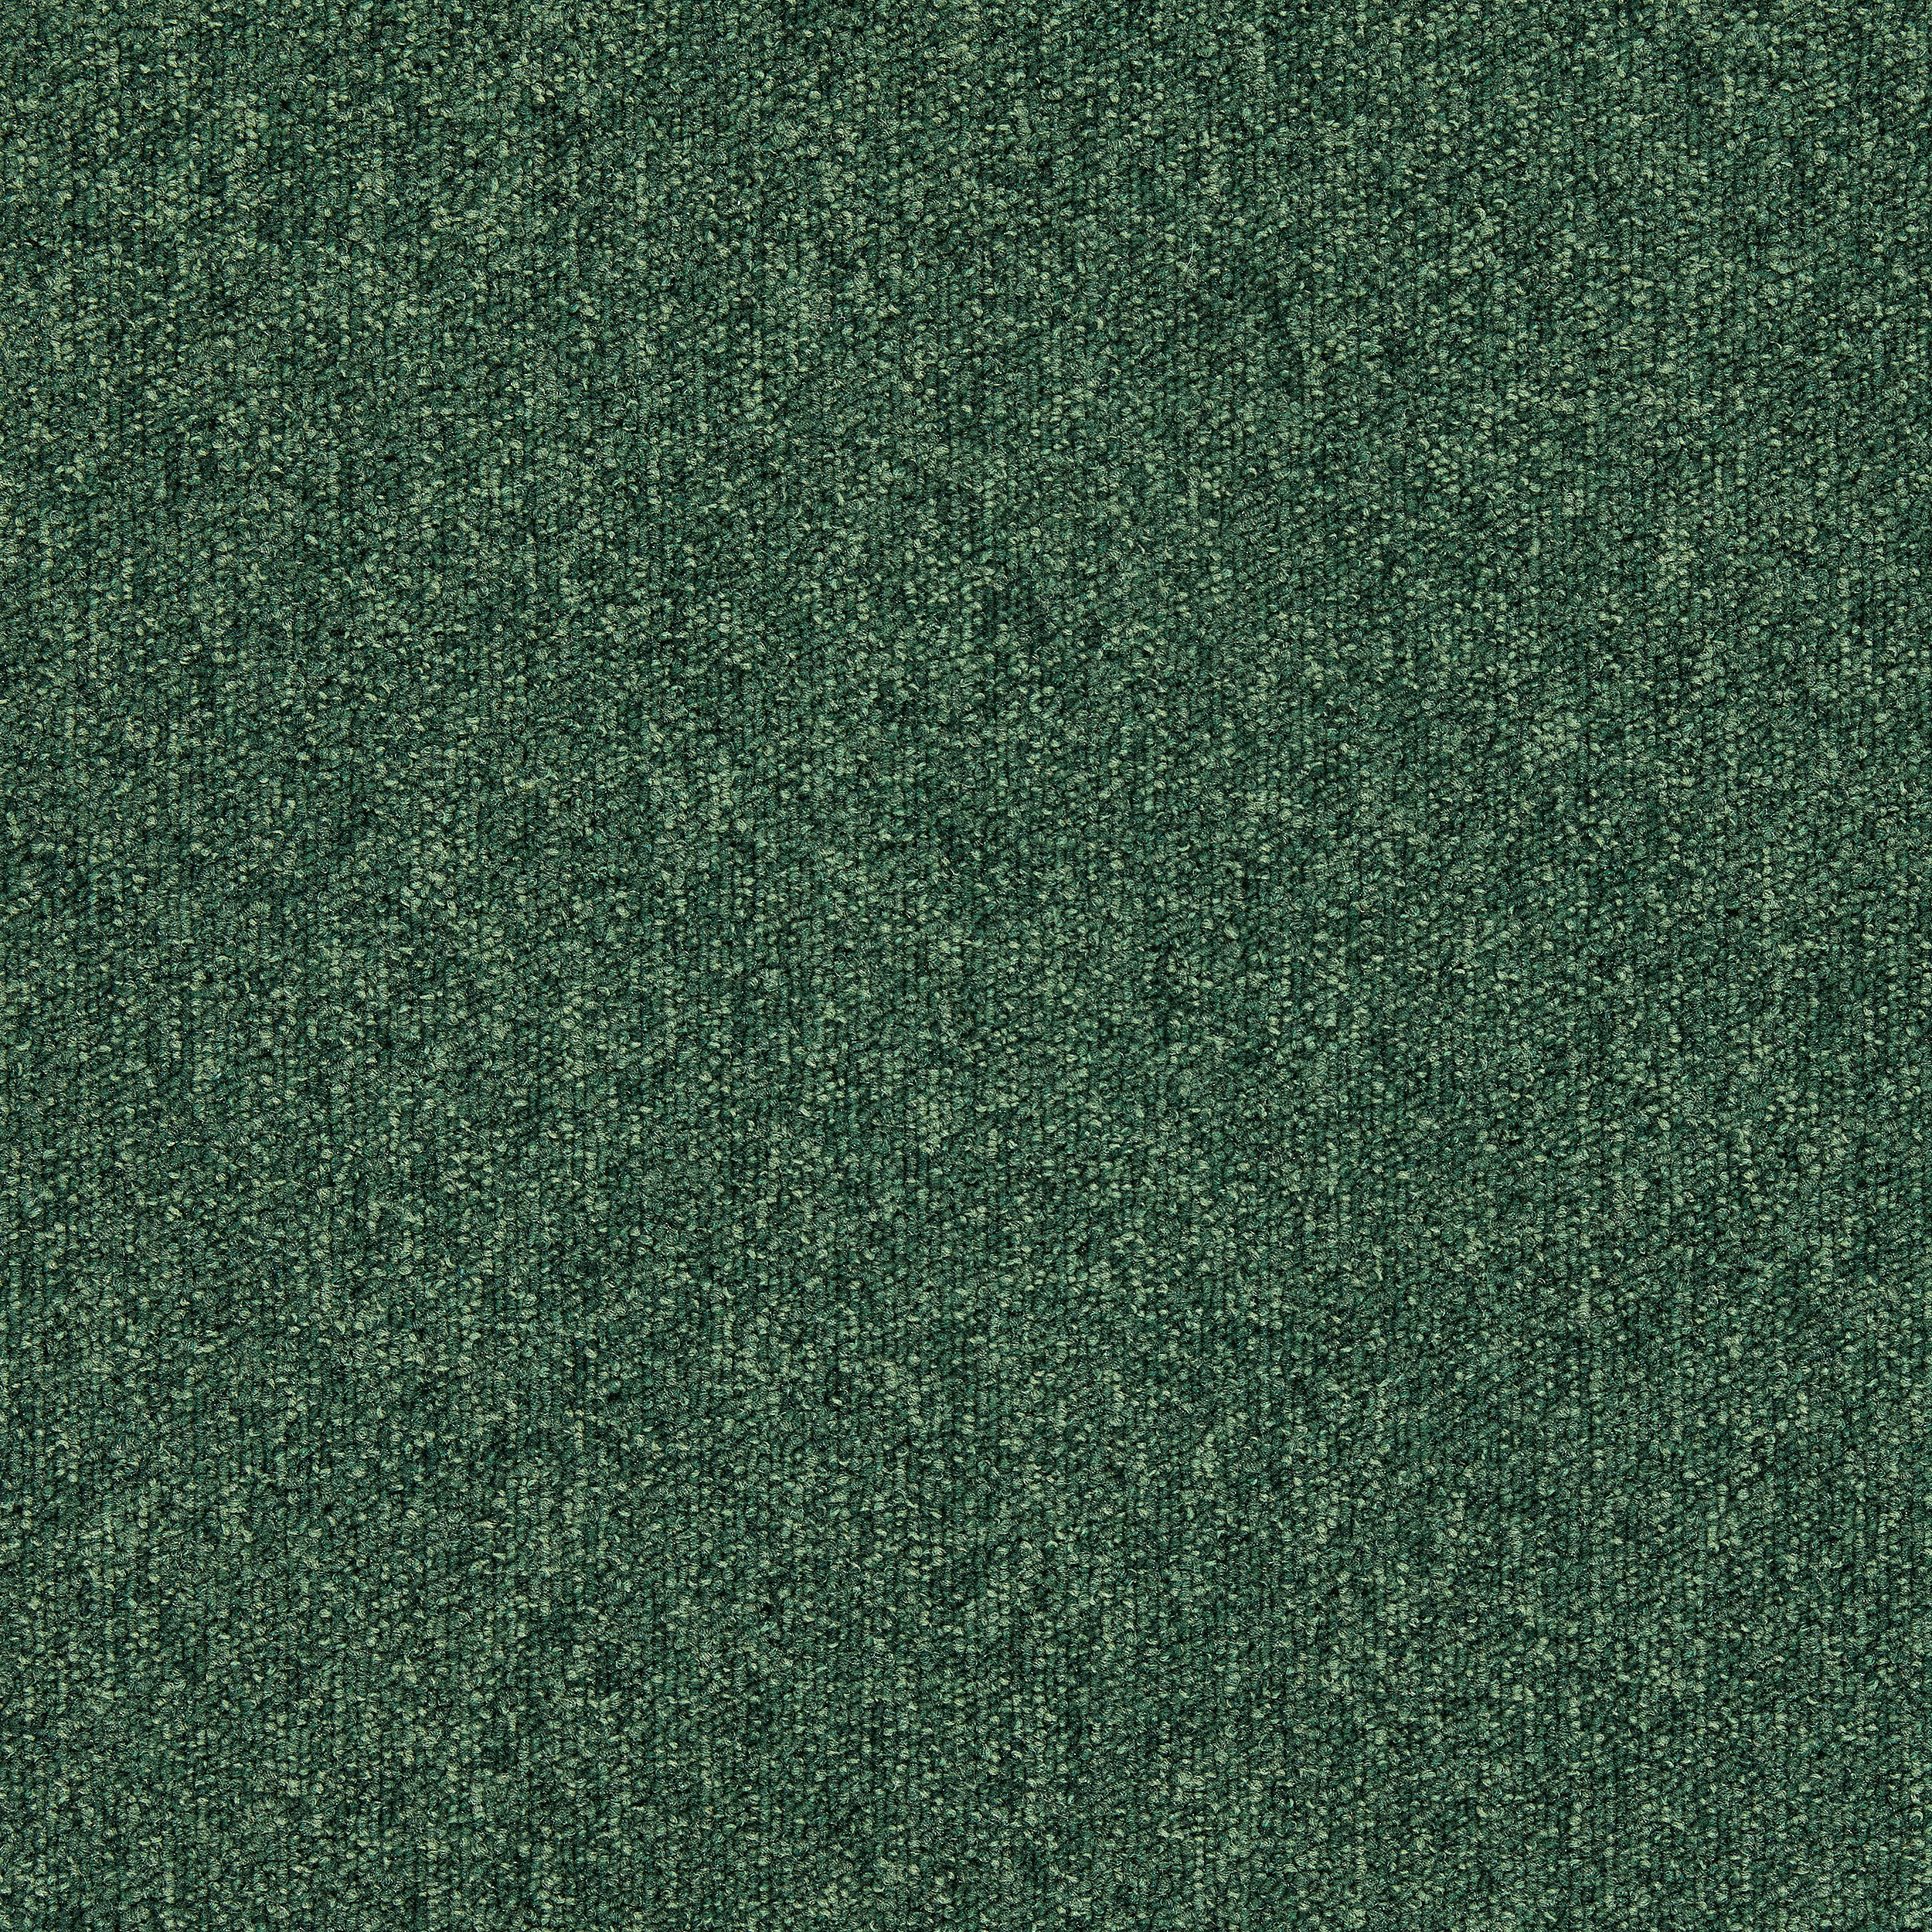 Heuga 727 Carpet Tile In Bottle Green image number 19